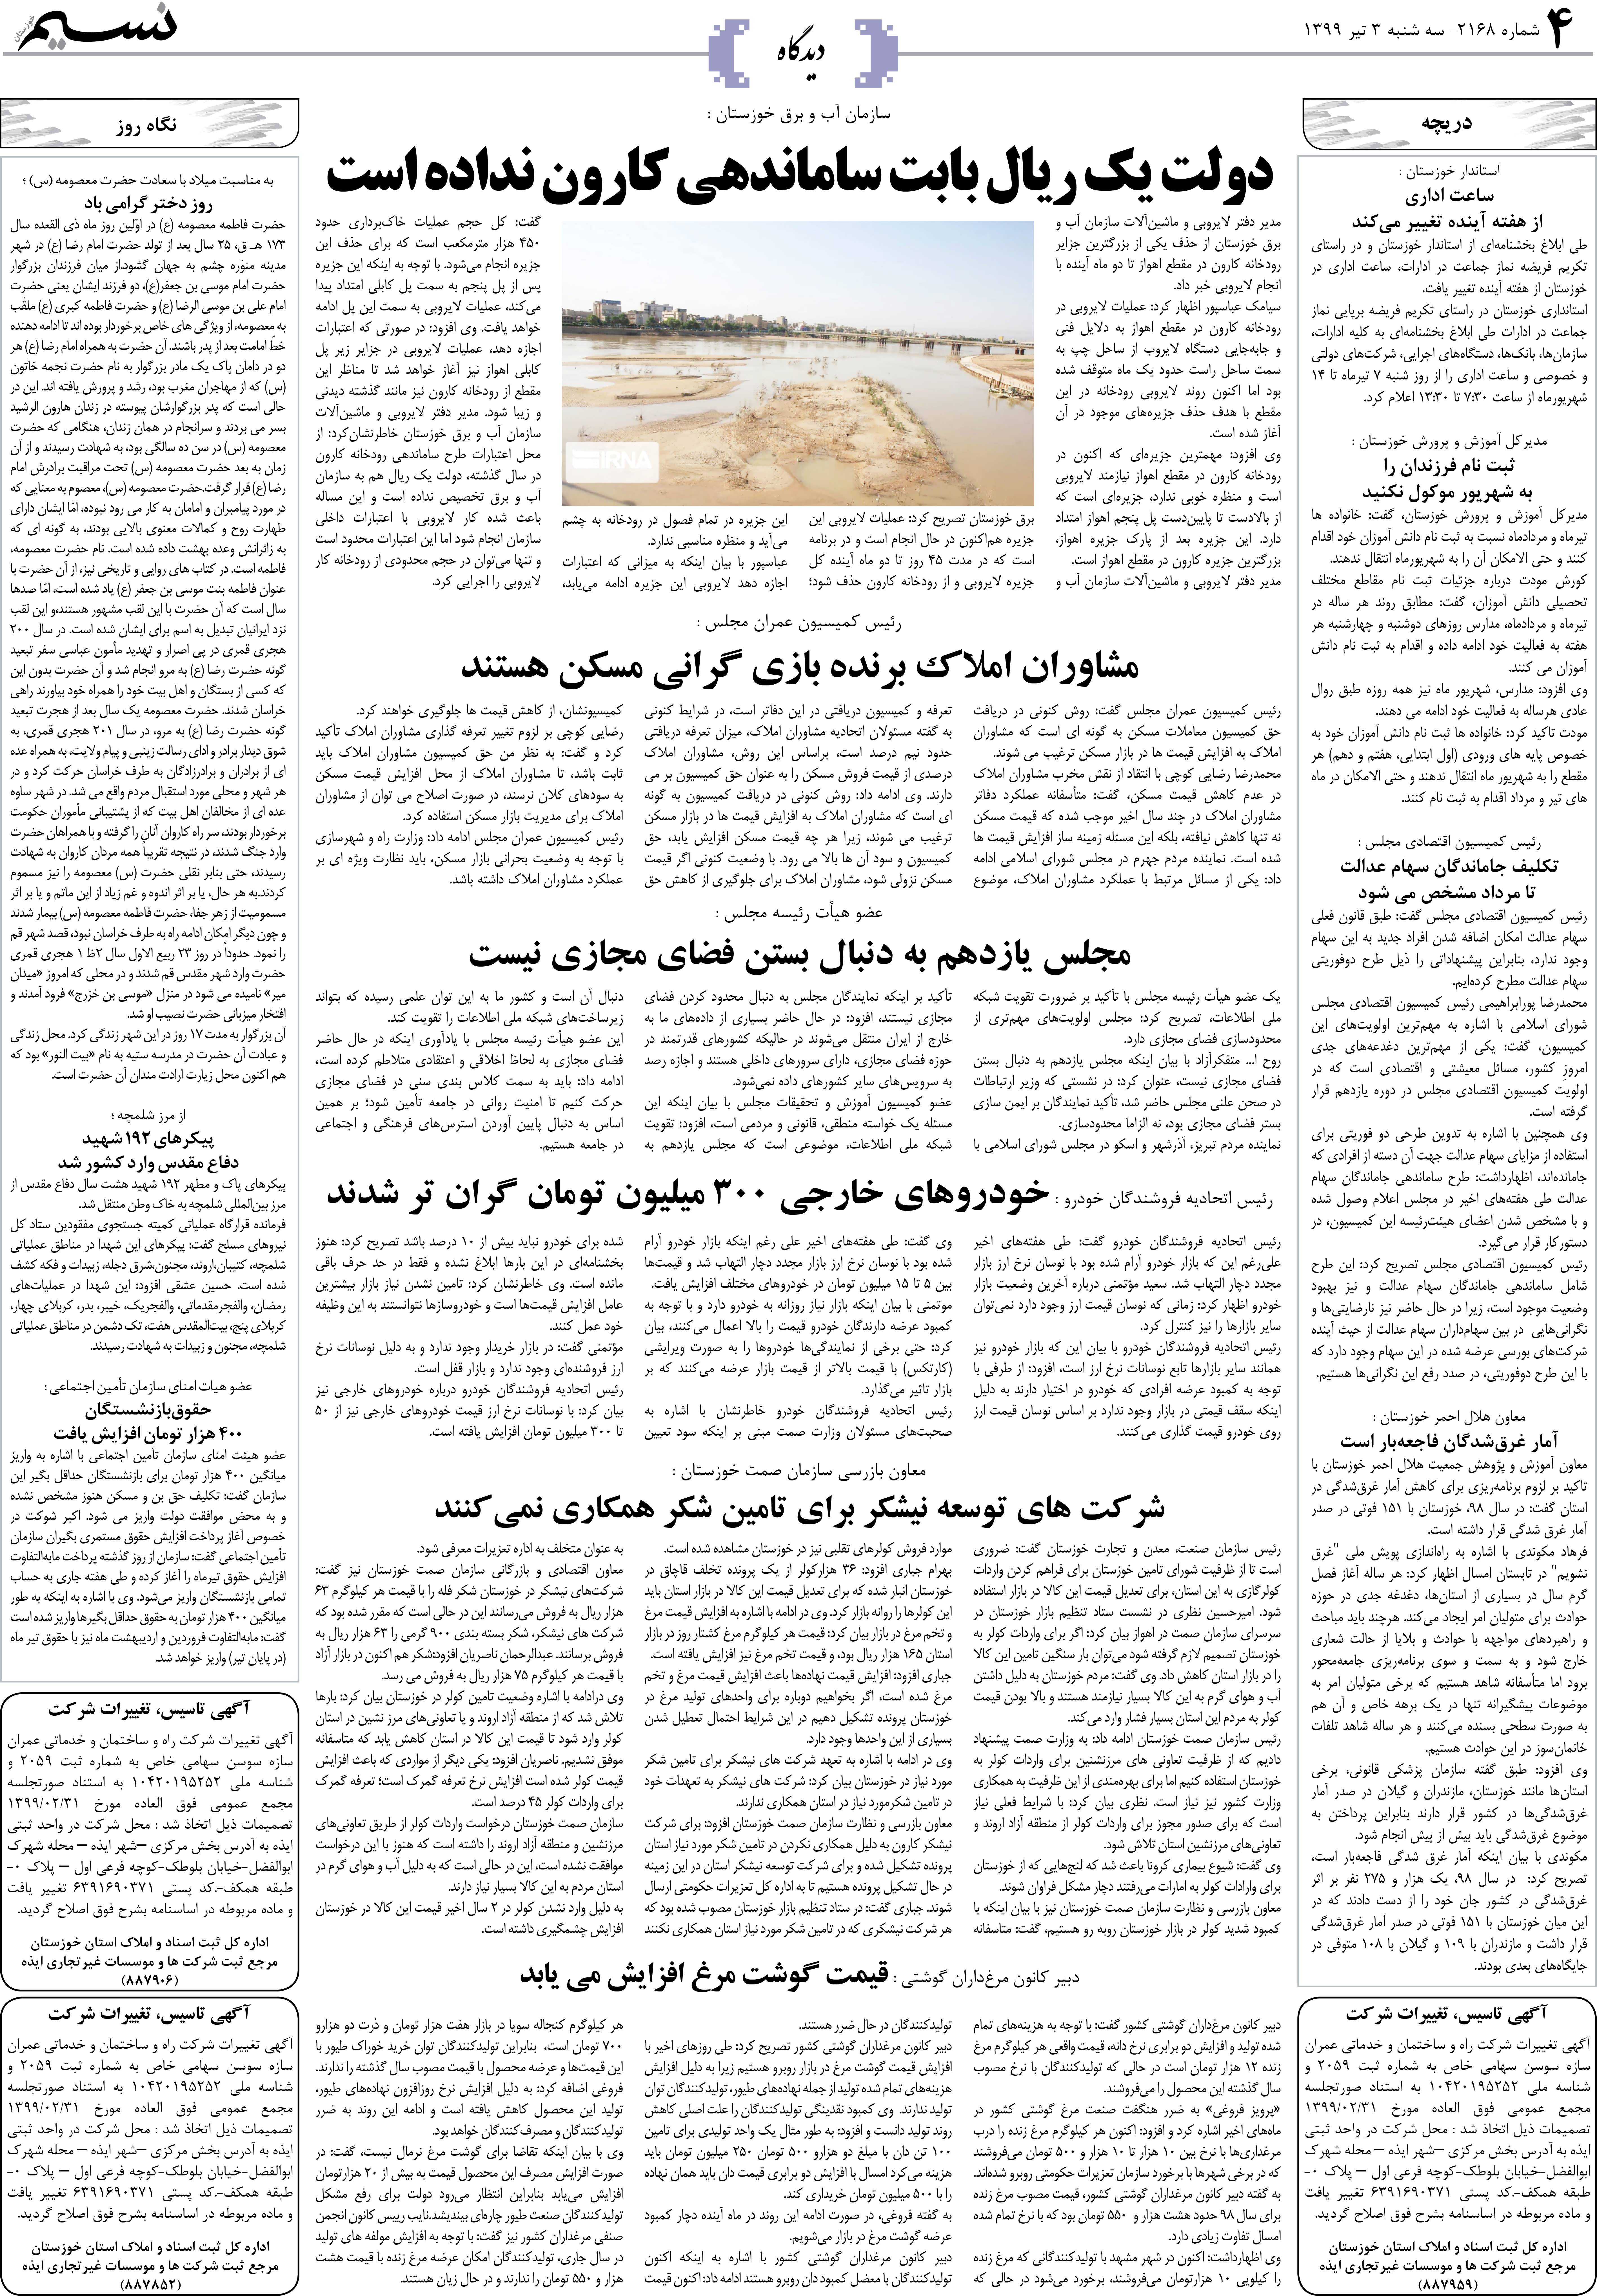 صفحه دیدگاه روزنامه نسیم شماره 2168